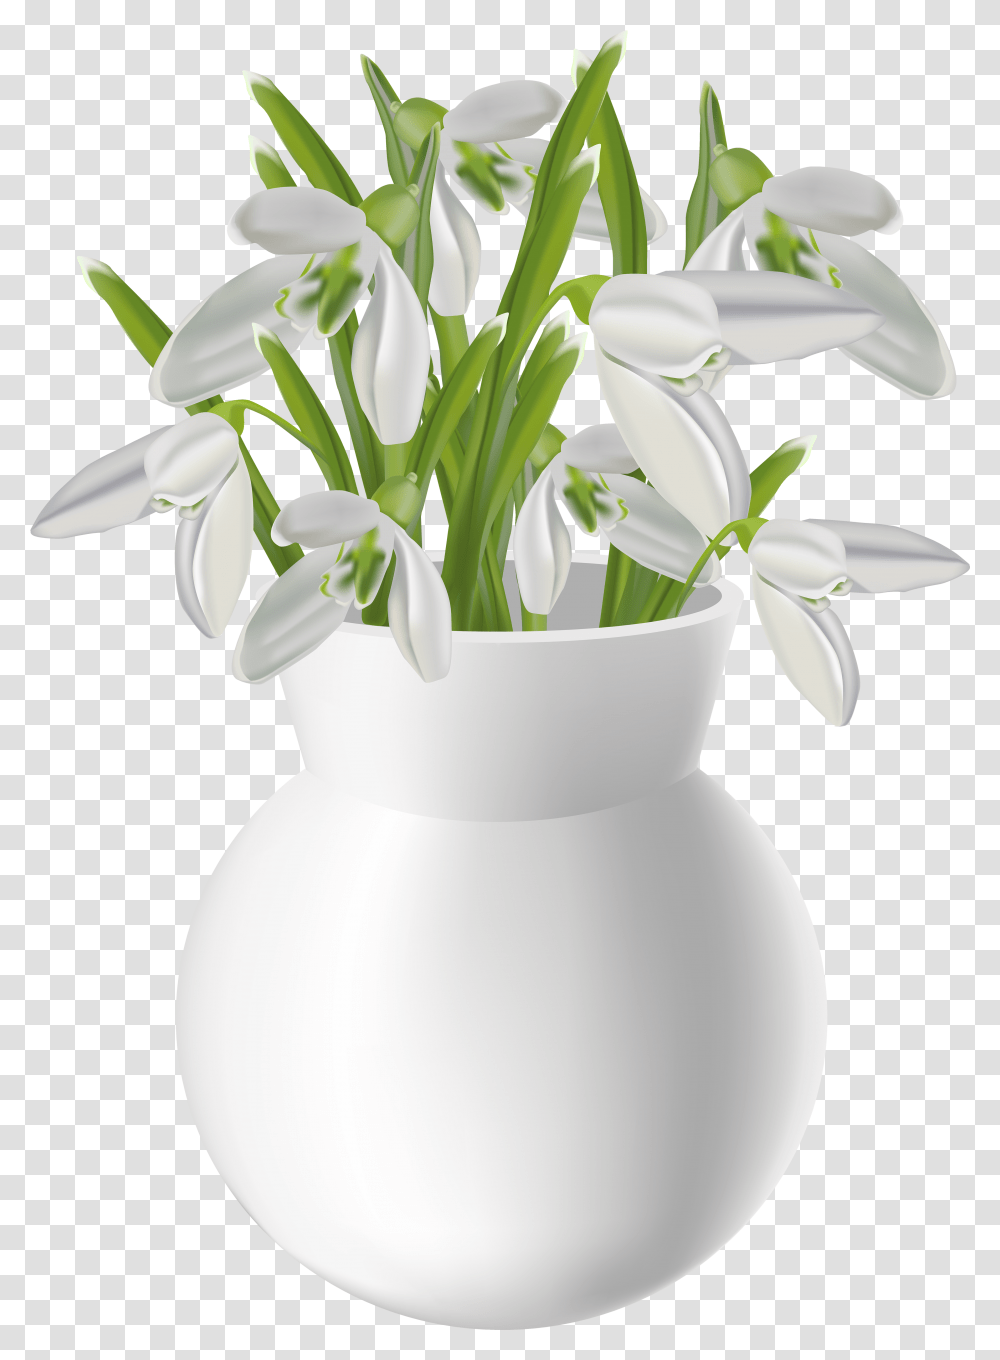 Download Hd White Flower Vase Flower Vase On Table Transparent Png